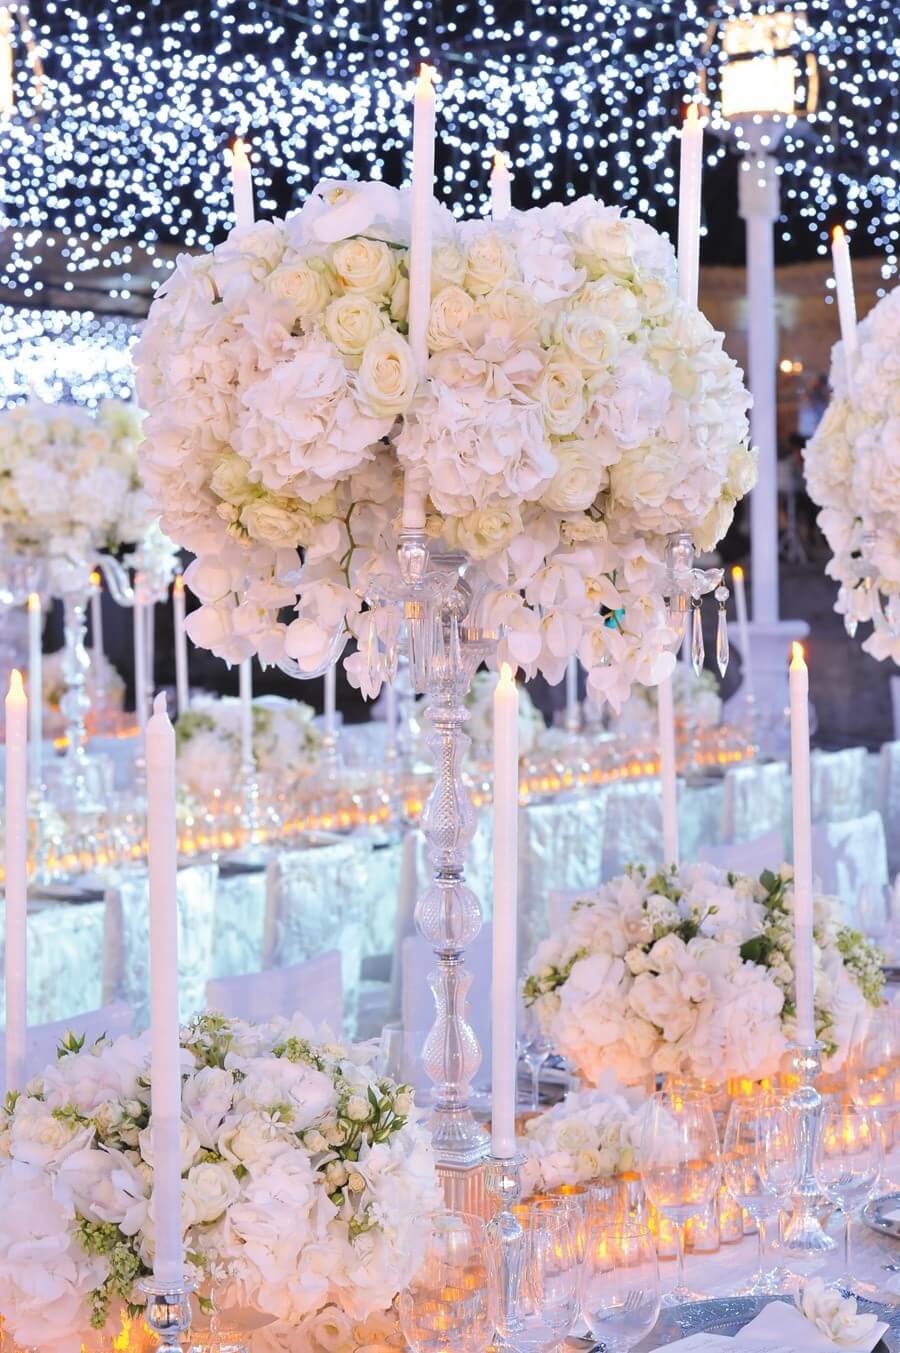 красивое оформление свадьбы цветами и свечками